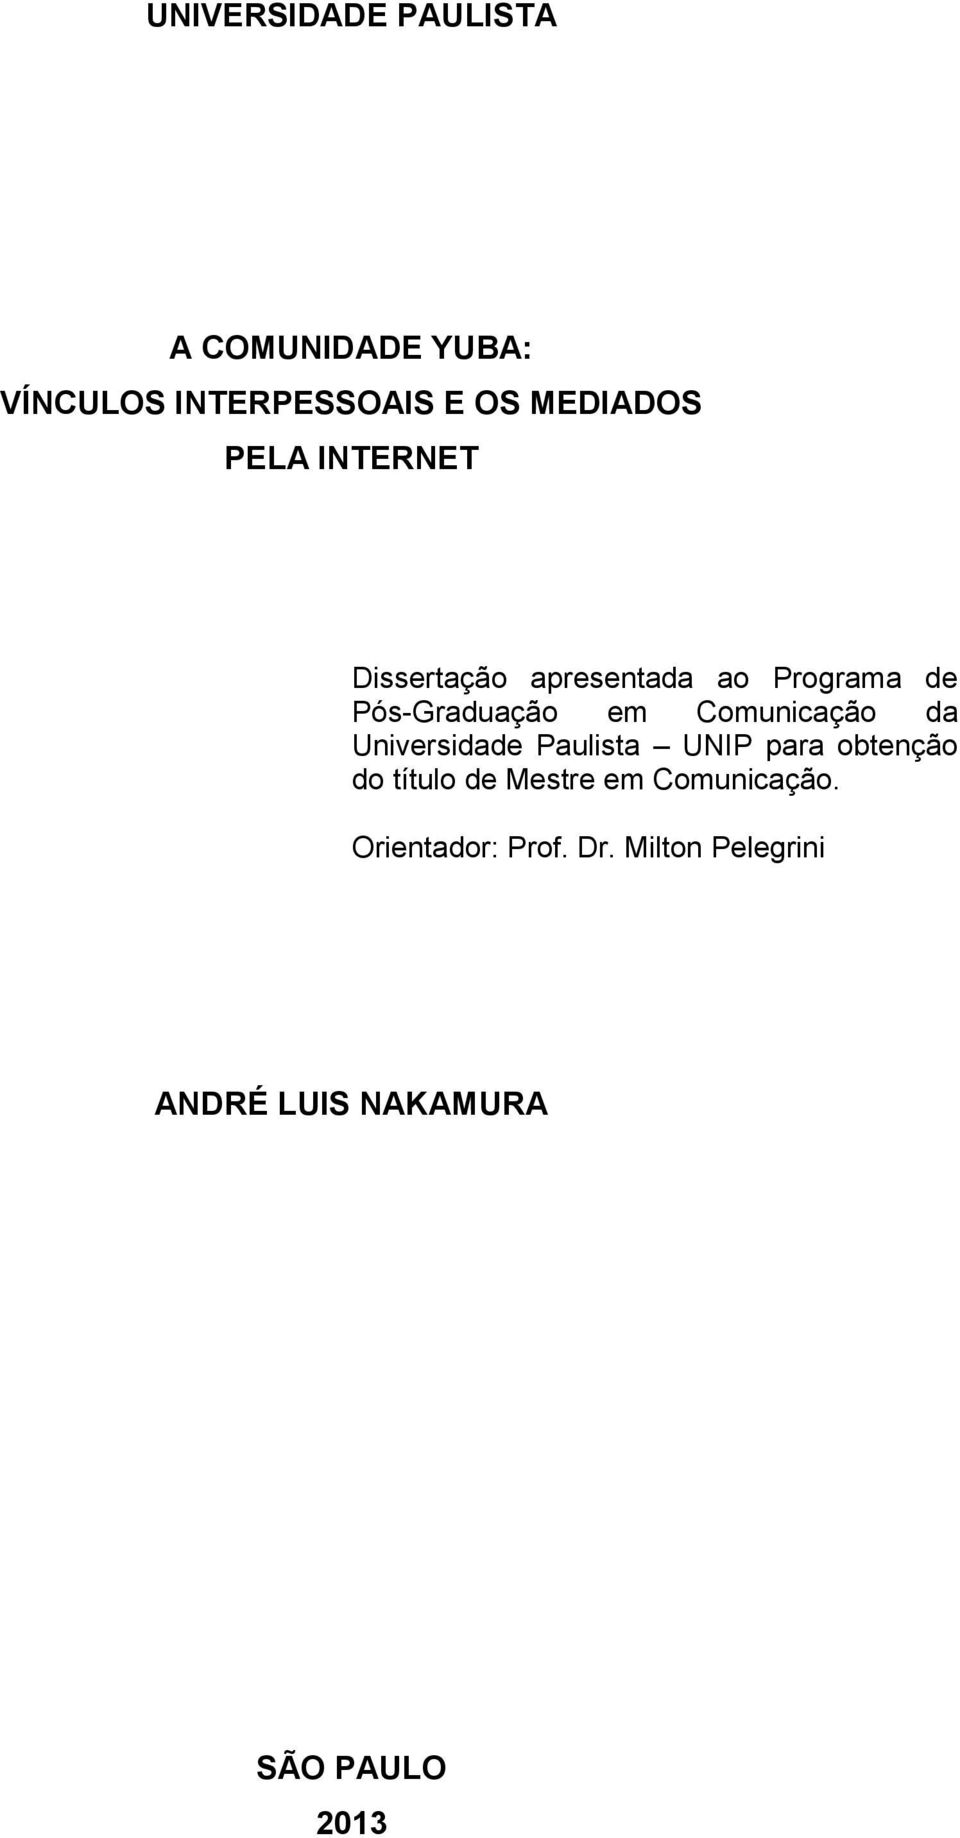 Comunicação da Universidade Paulista UNIP para obtenção do título de Mestre em